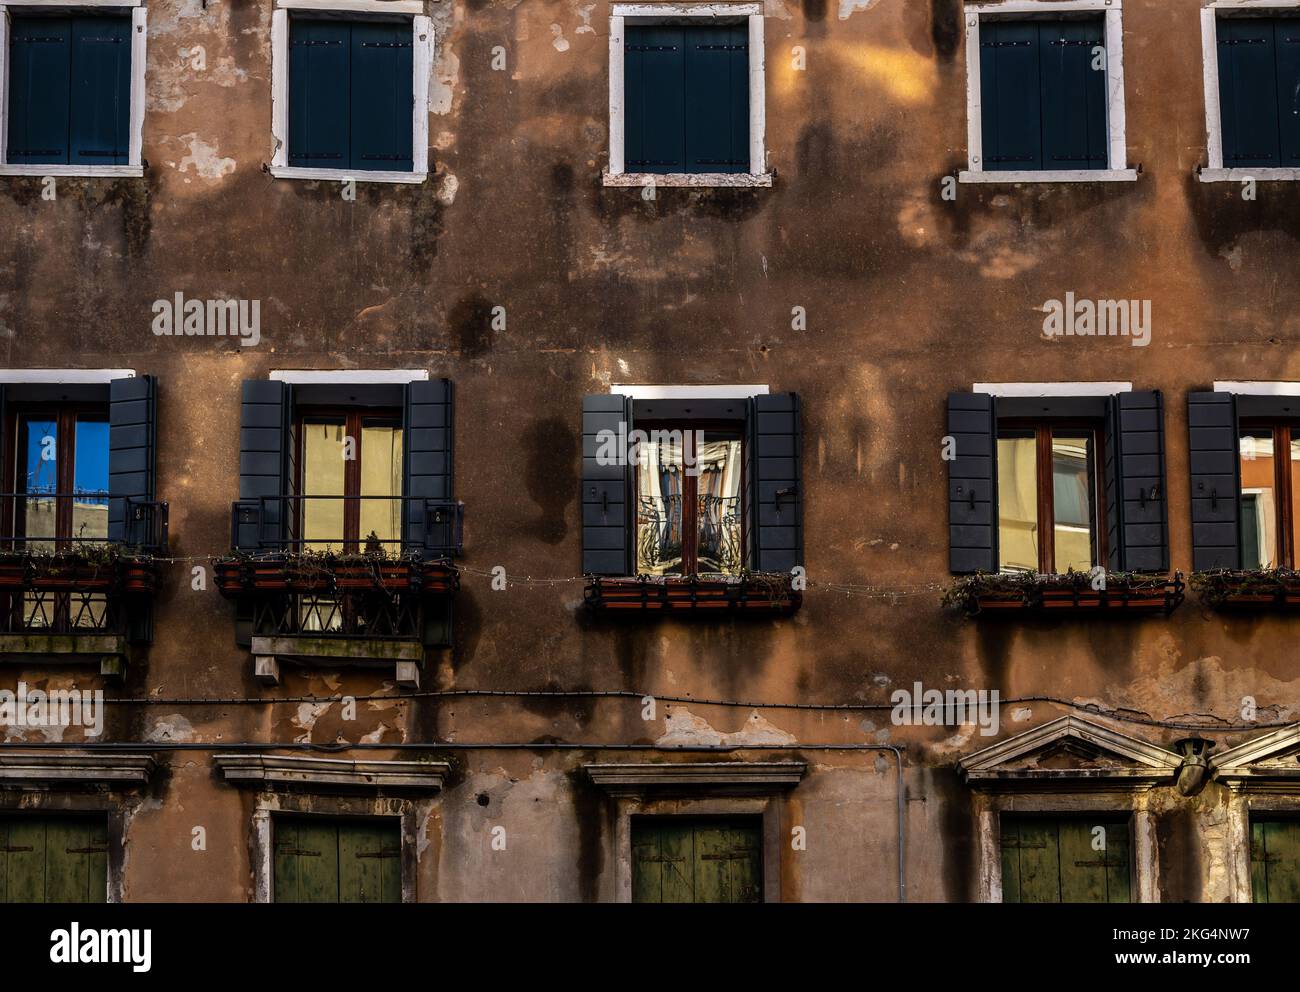 Venise l'image de l'italie montre la scène vénitienne typique d'un vieux bâtiment avec des volets et des reflets.lumière du soleil qui s'applique sur le bâtiment Banque D'Images